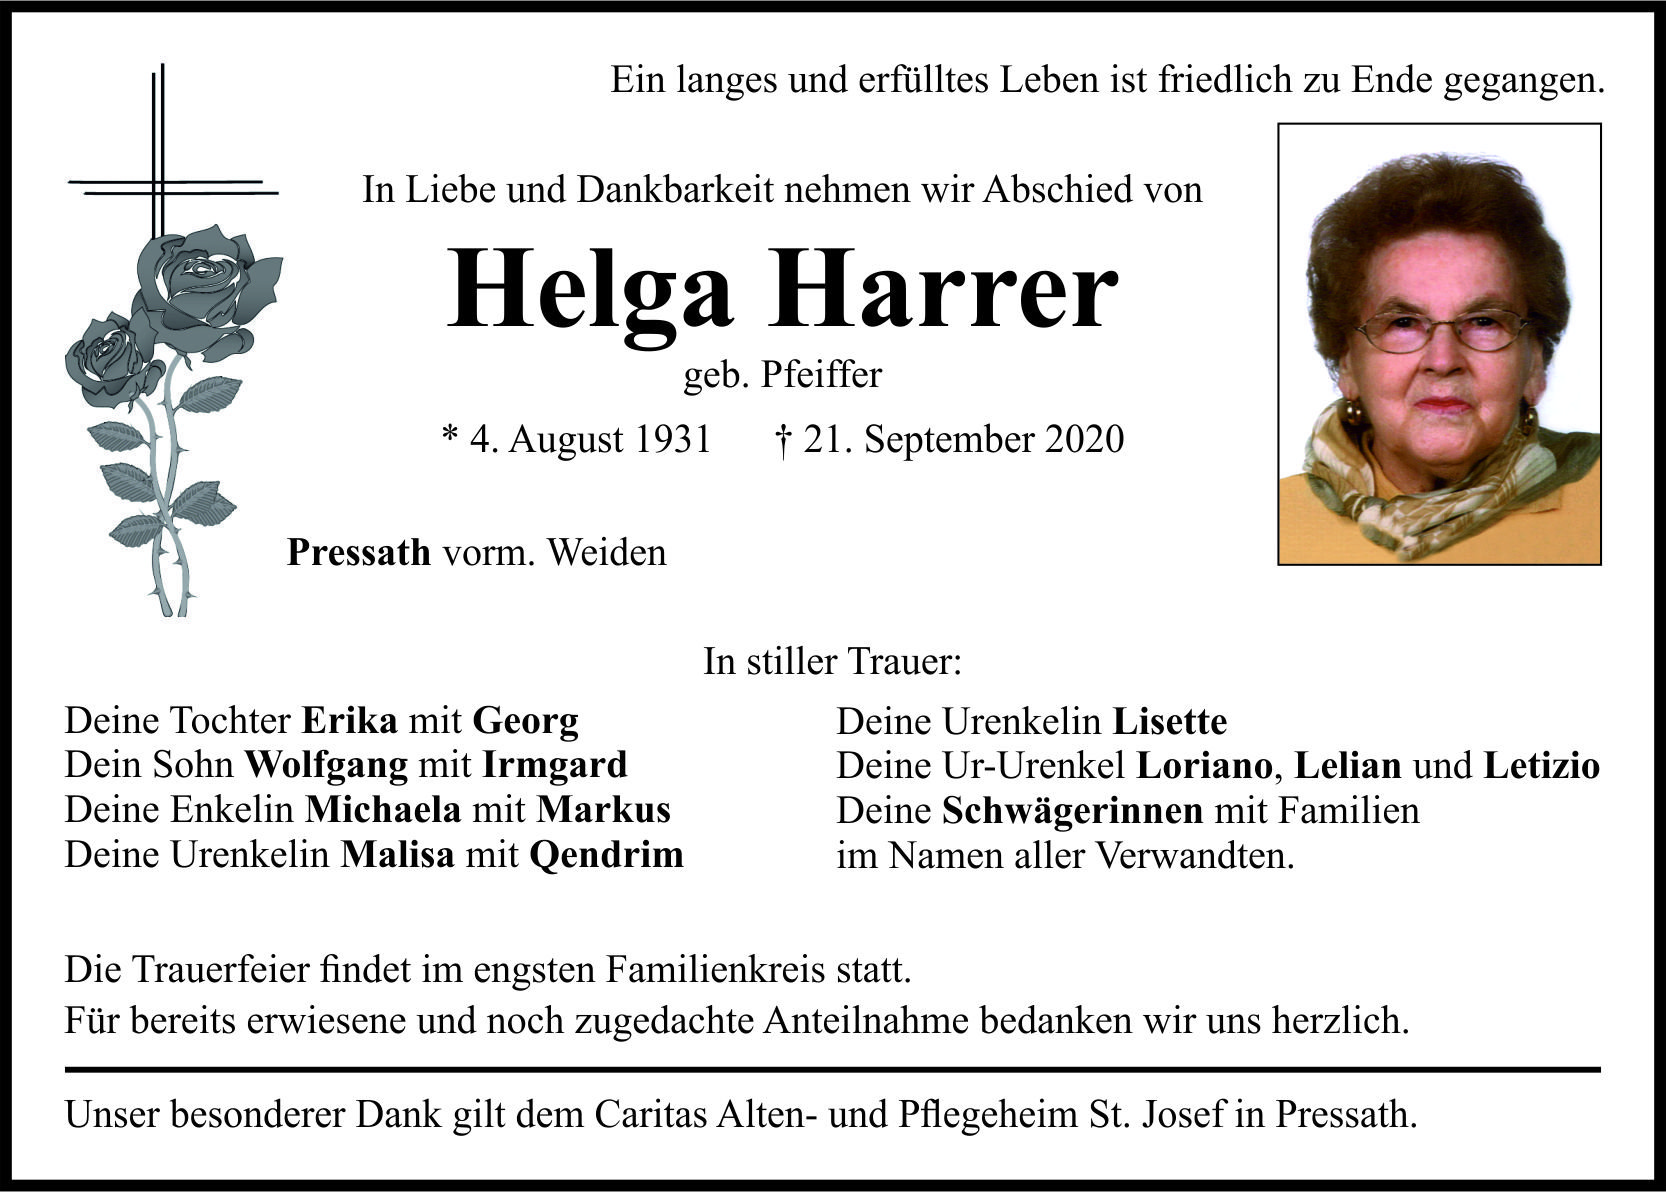 Traueranzeige Helga Harrer, Pressath